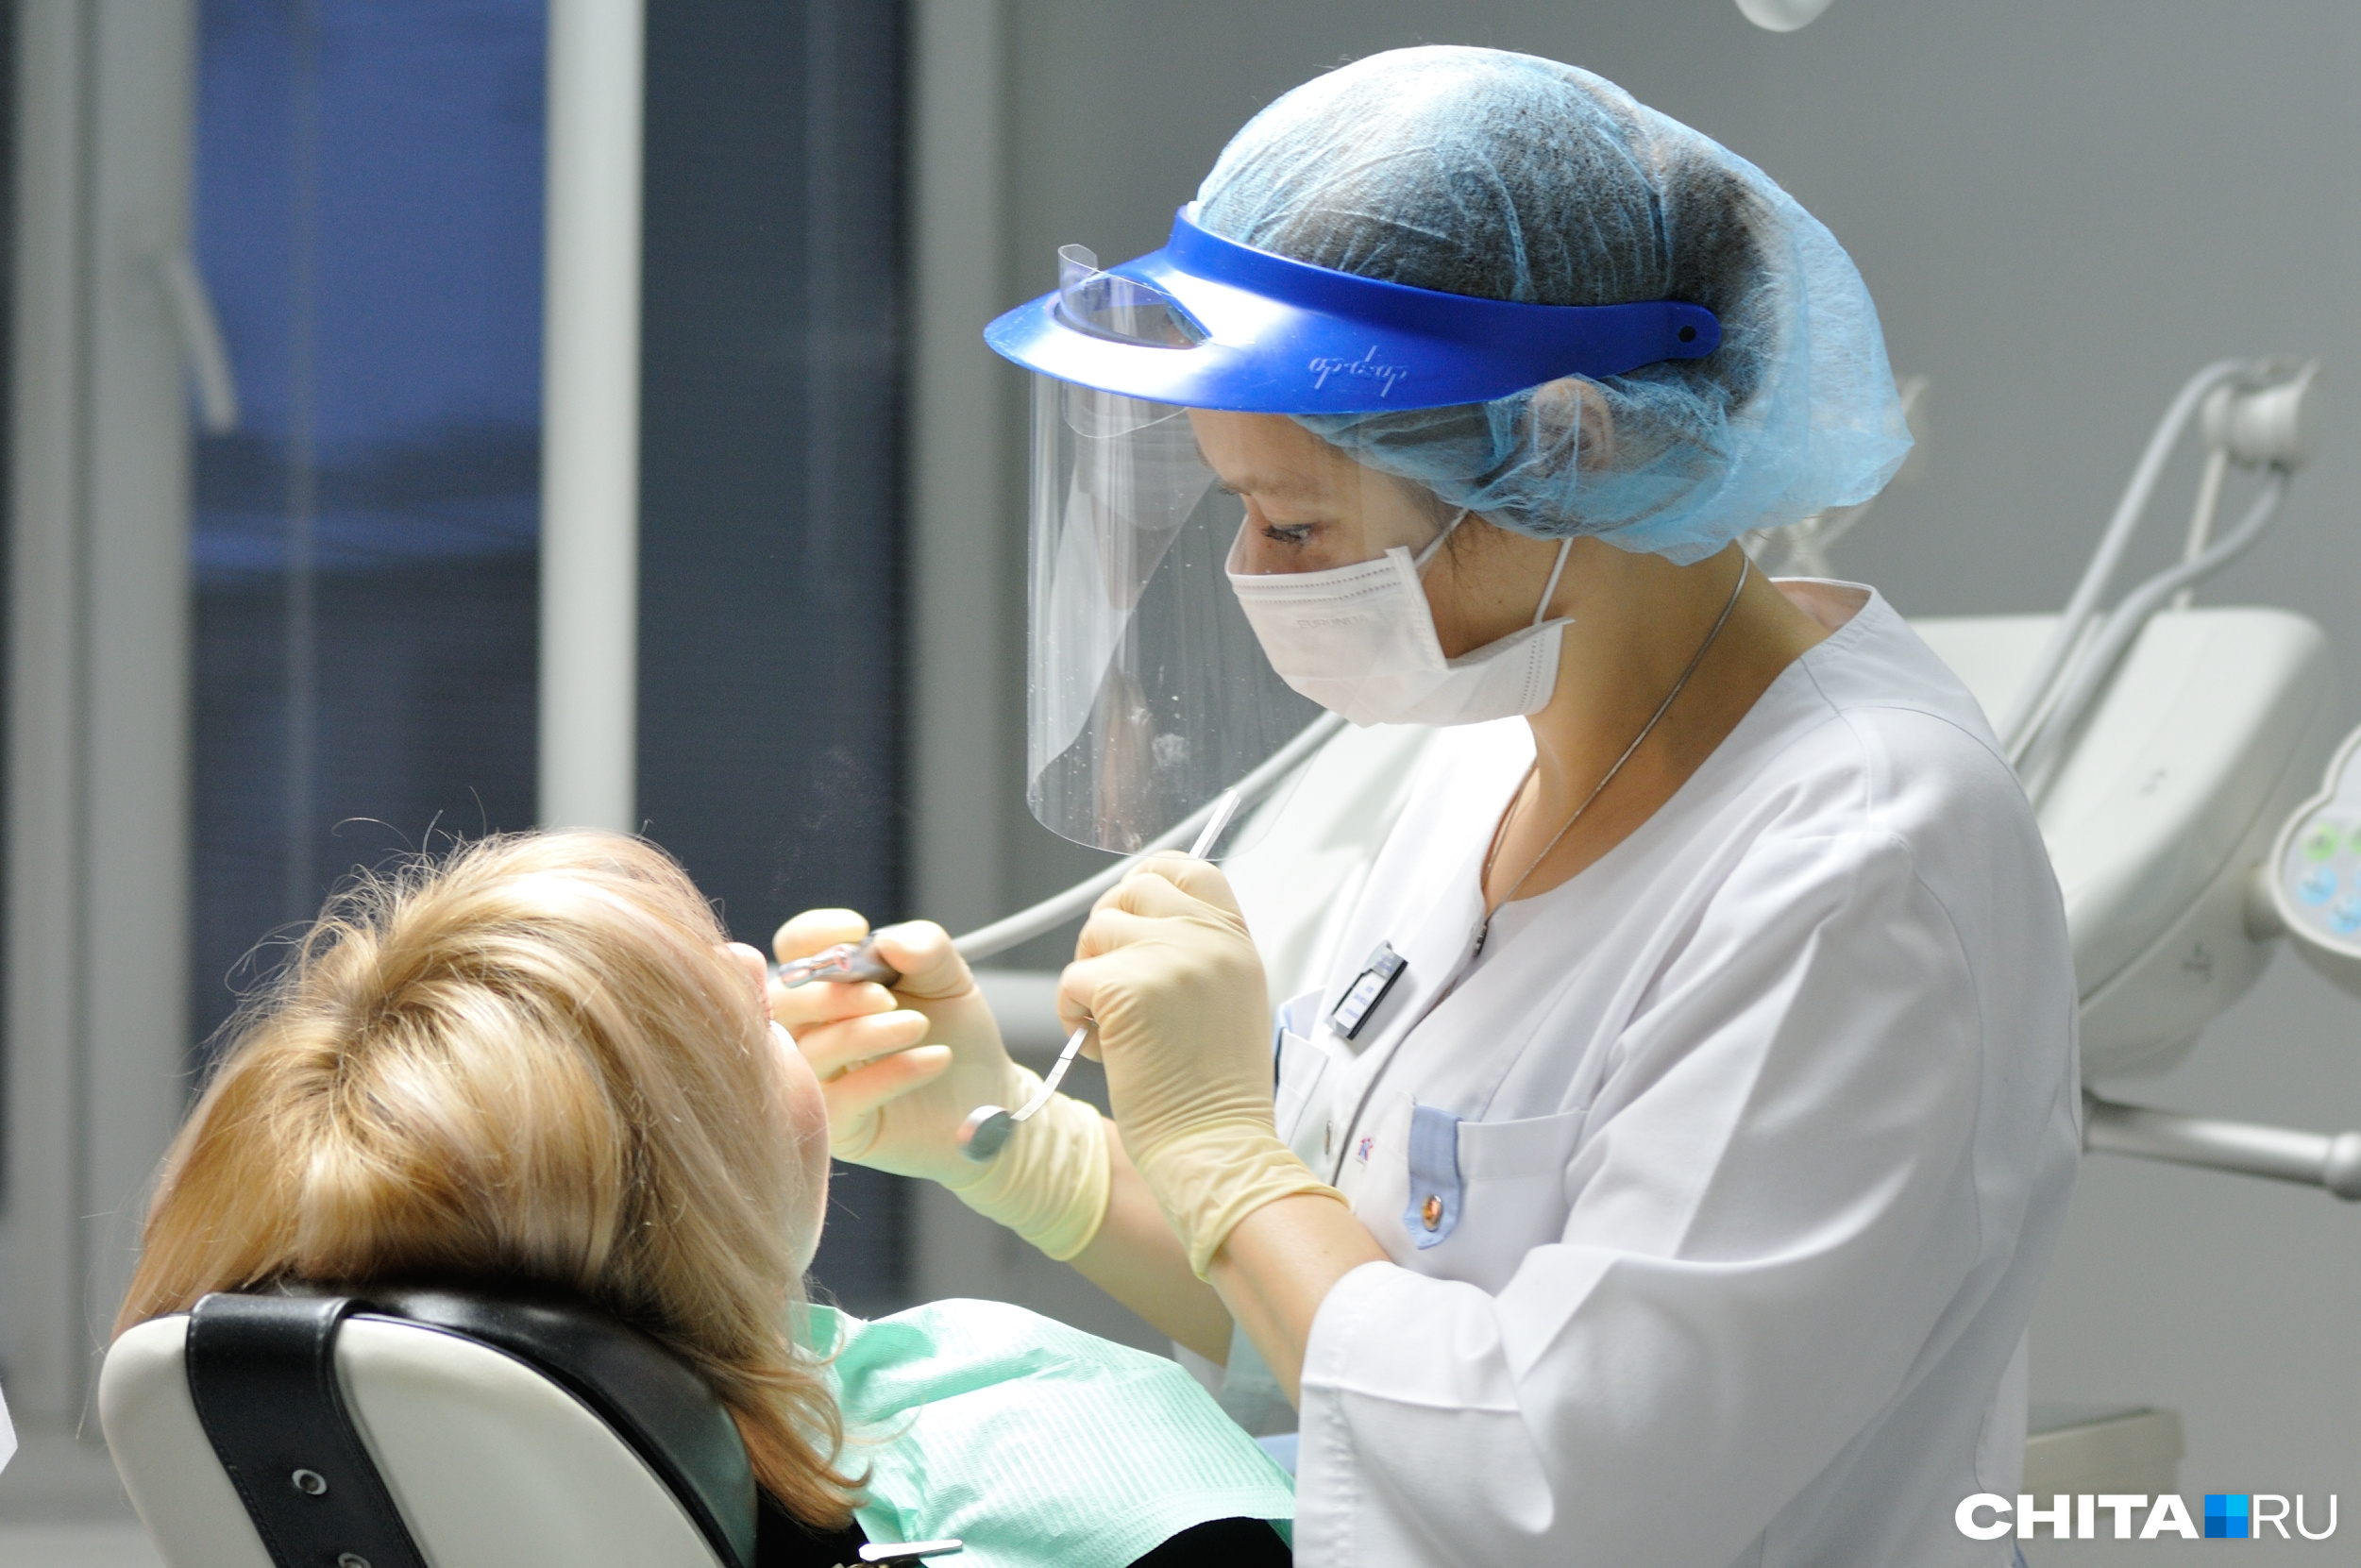 Читатели «Чита.Ру» выбрали Марию Кордюк лучшим стоматологом Забайкалья